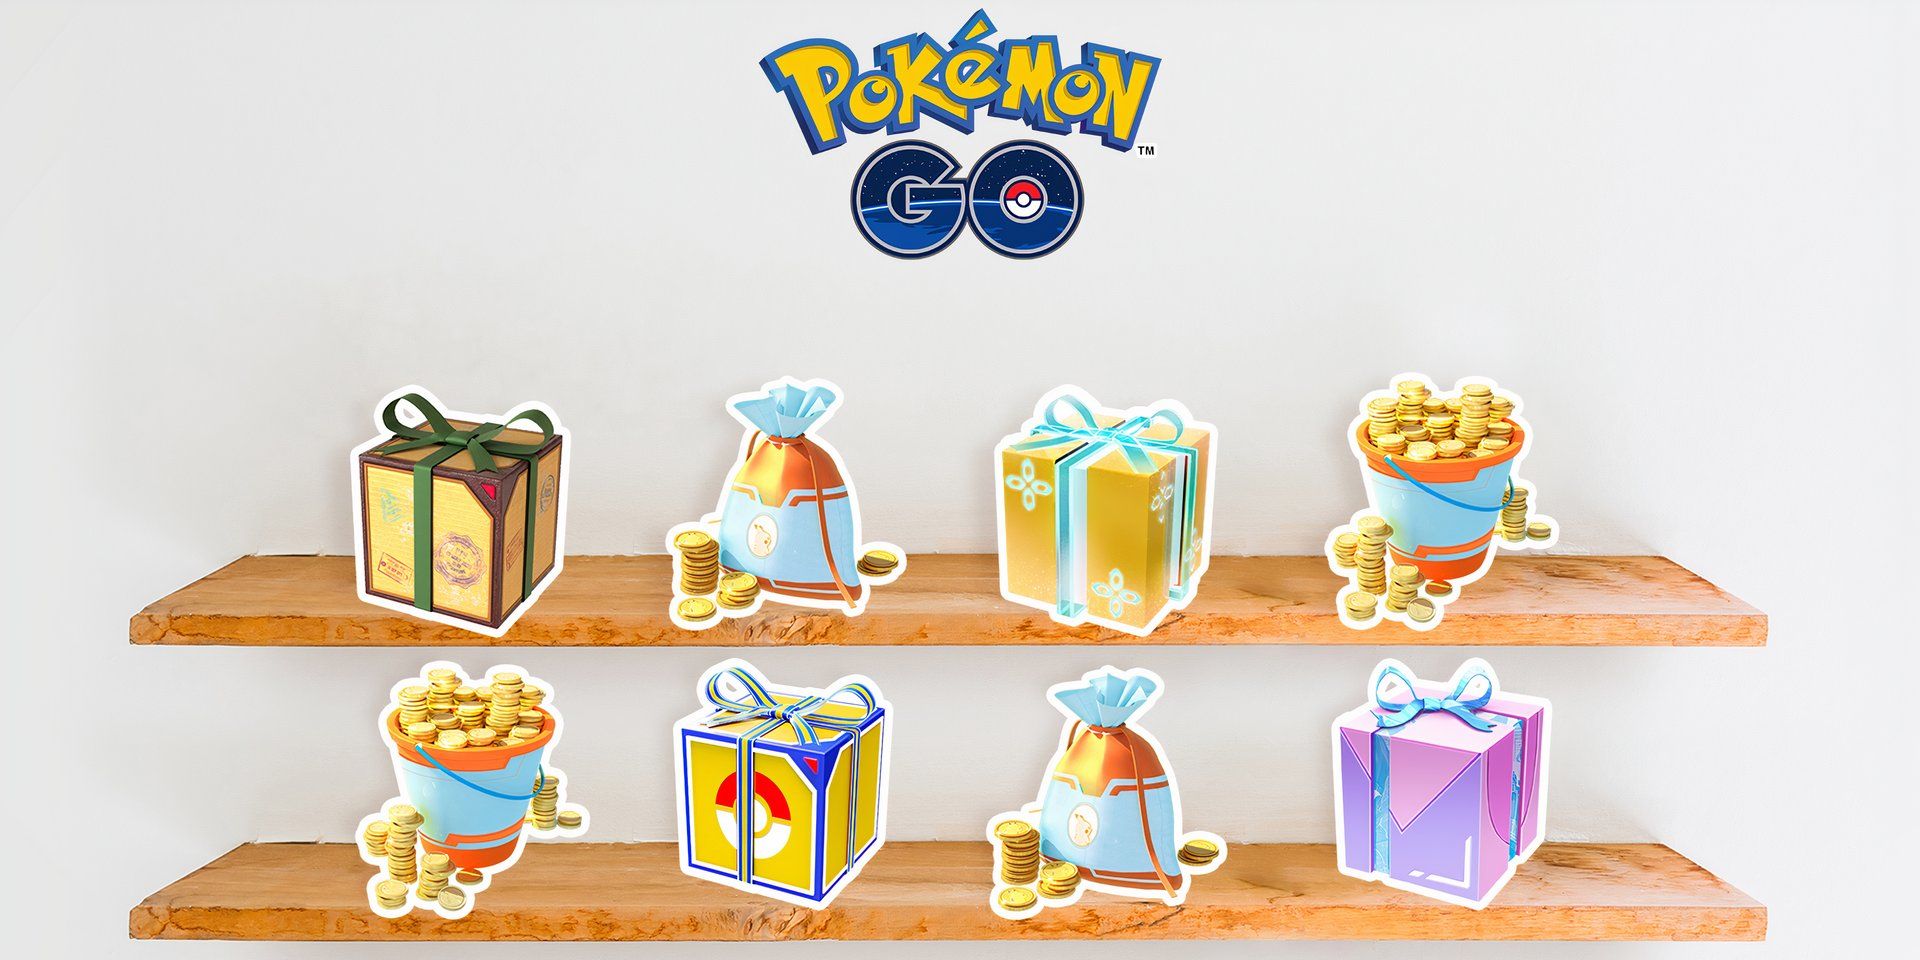 Prateleiras contendo caixas de presente do Pokémon GO na loja virtual